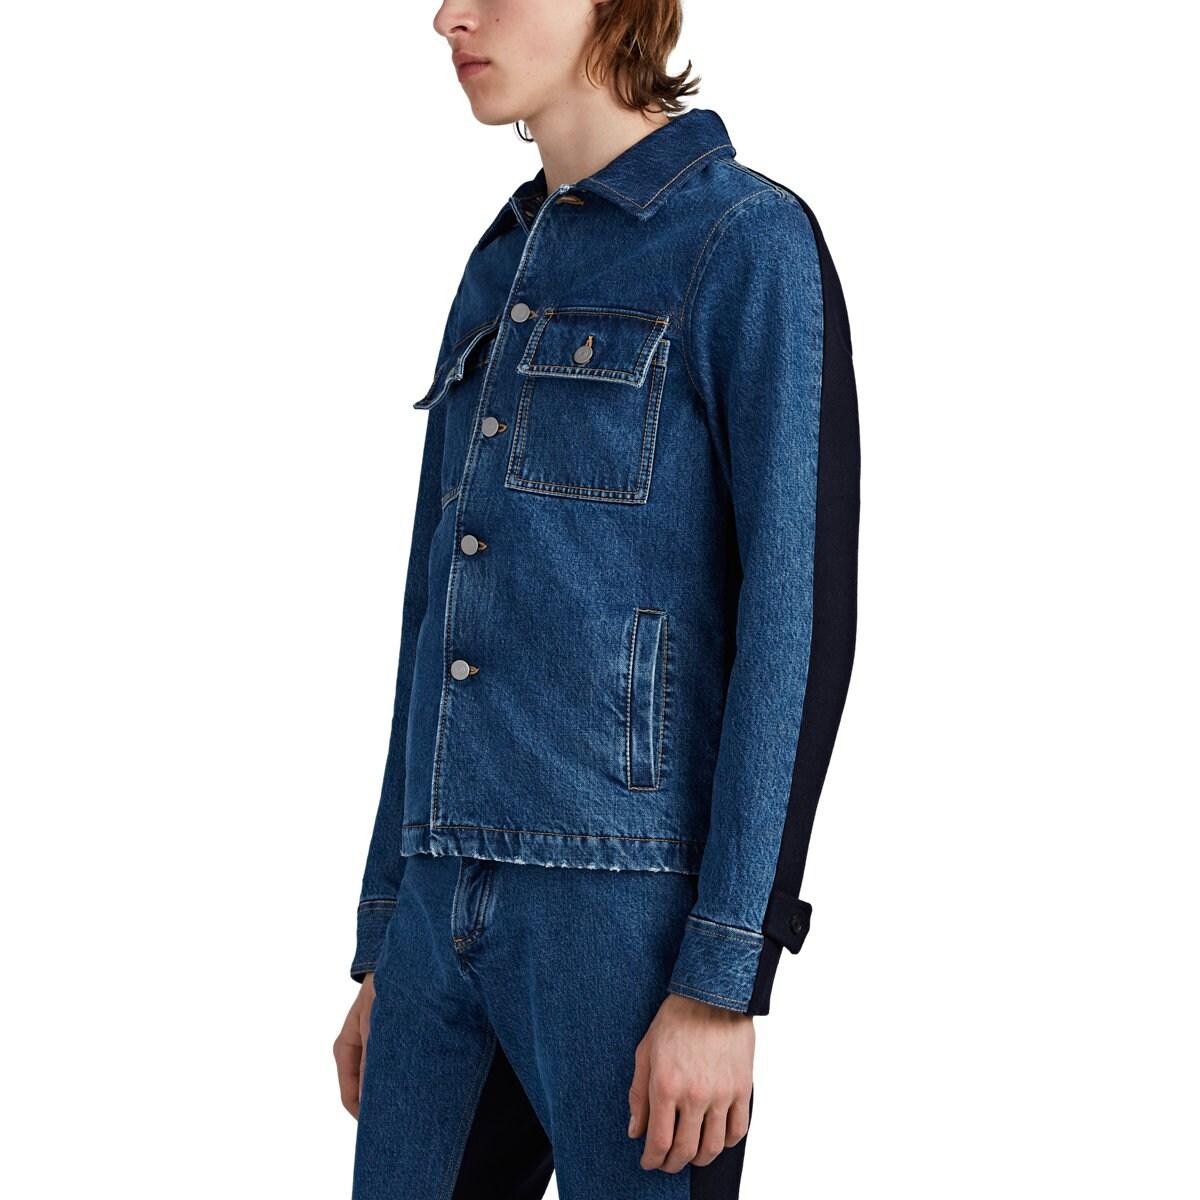 Maison Margiela Cotton Spliced Trucker Jacket in Blue for Men - Lyst